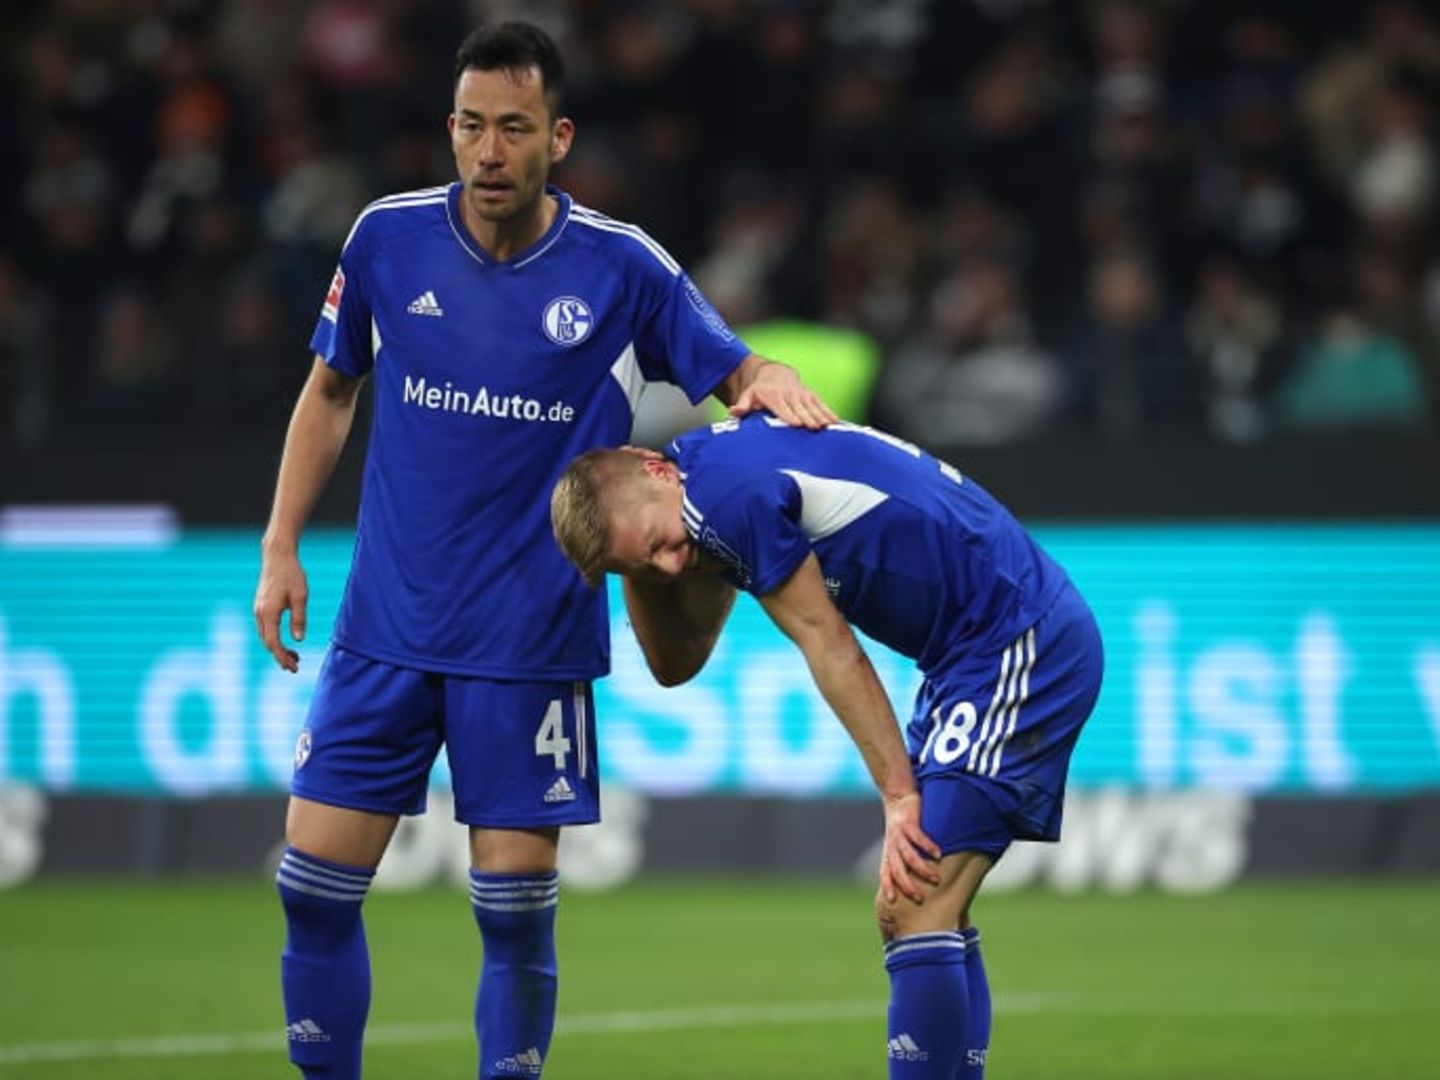 Mit Niederlage in Frankfurt Schalke stellt neuen Negativ-Rekord auf STERN.de